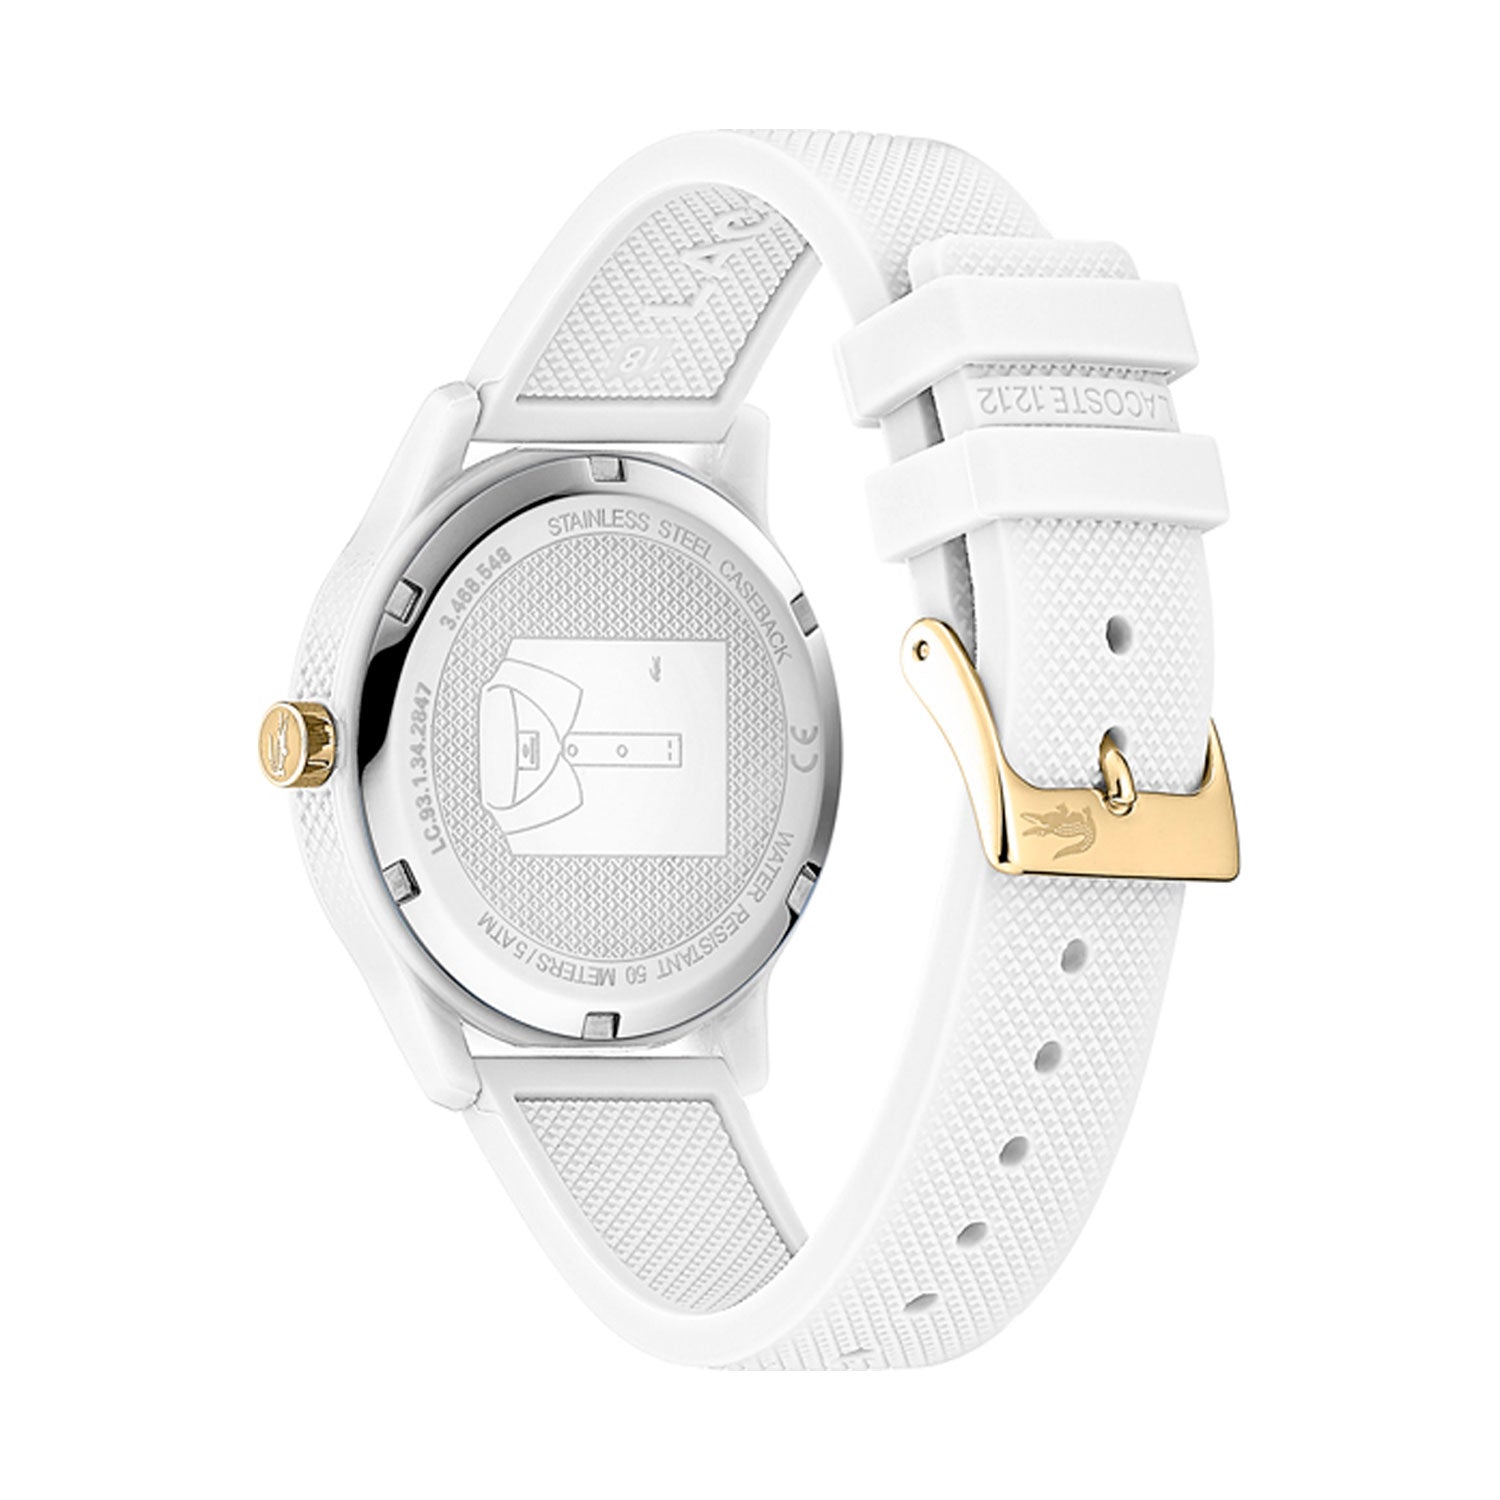 Reloj de mujer Lacoste Watches 2001063 de silicona blanco